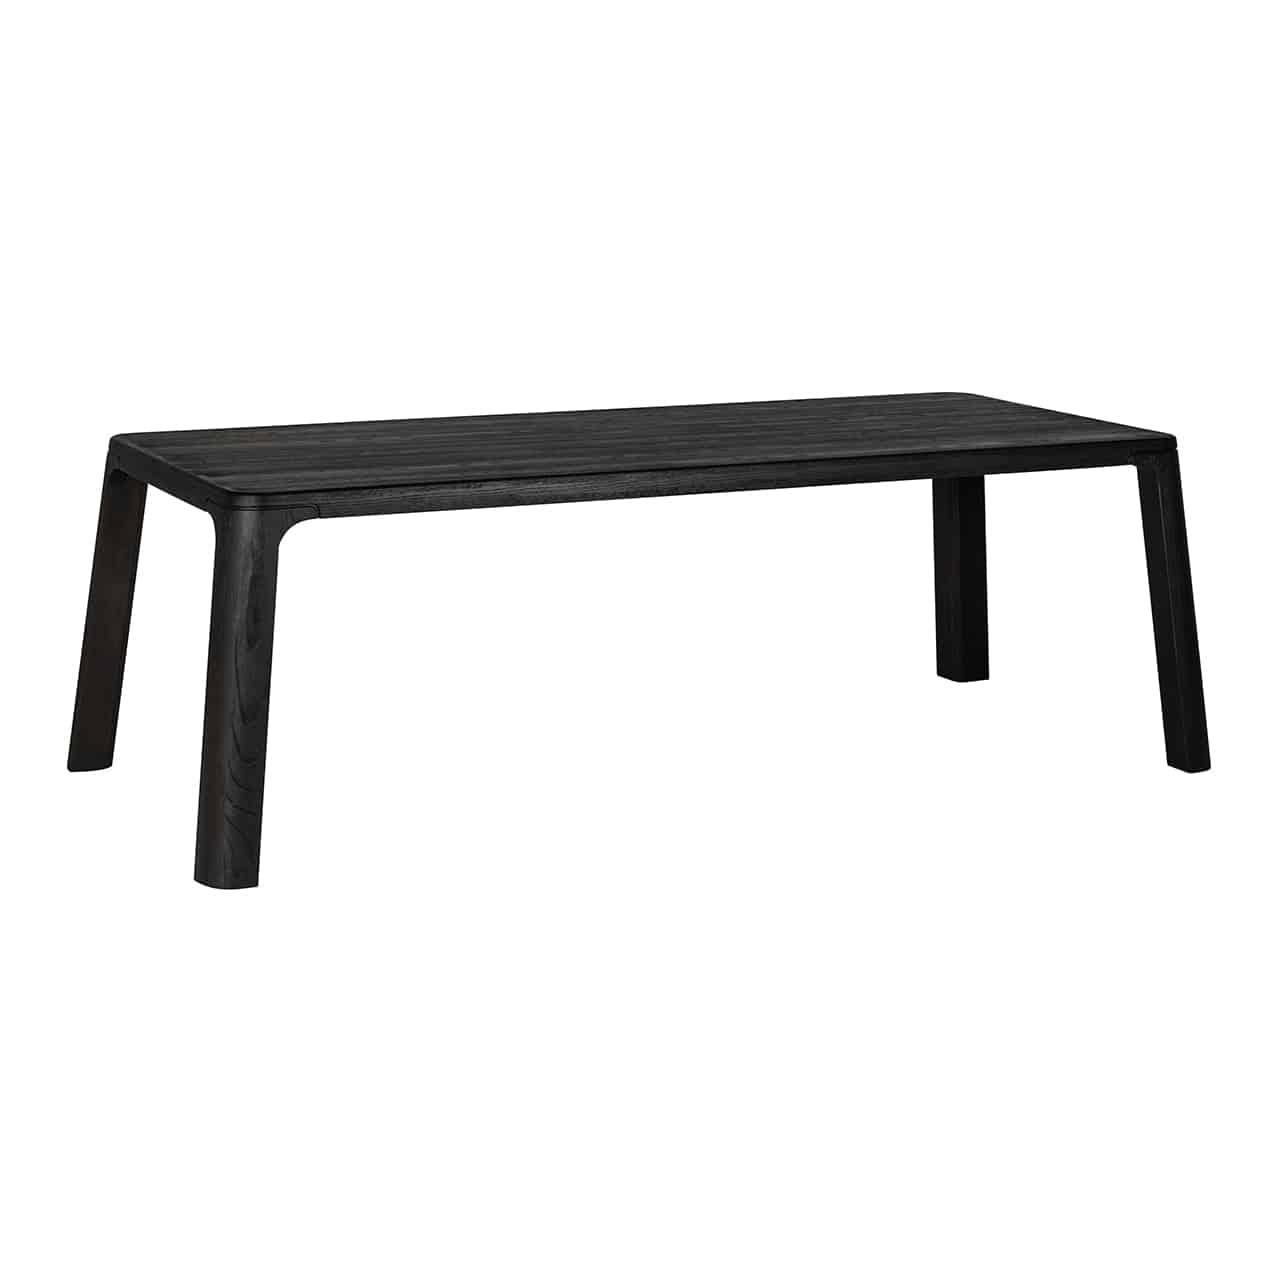 Langer, rechteckiger Esstisch in schwarz, mit leicht nach außen stehenden, abgerundeten Beinen; auch die Ecken des Tisches sind abgerundet.